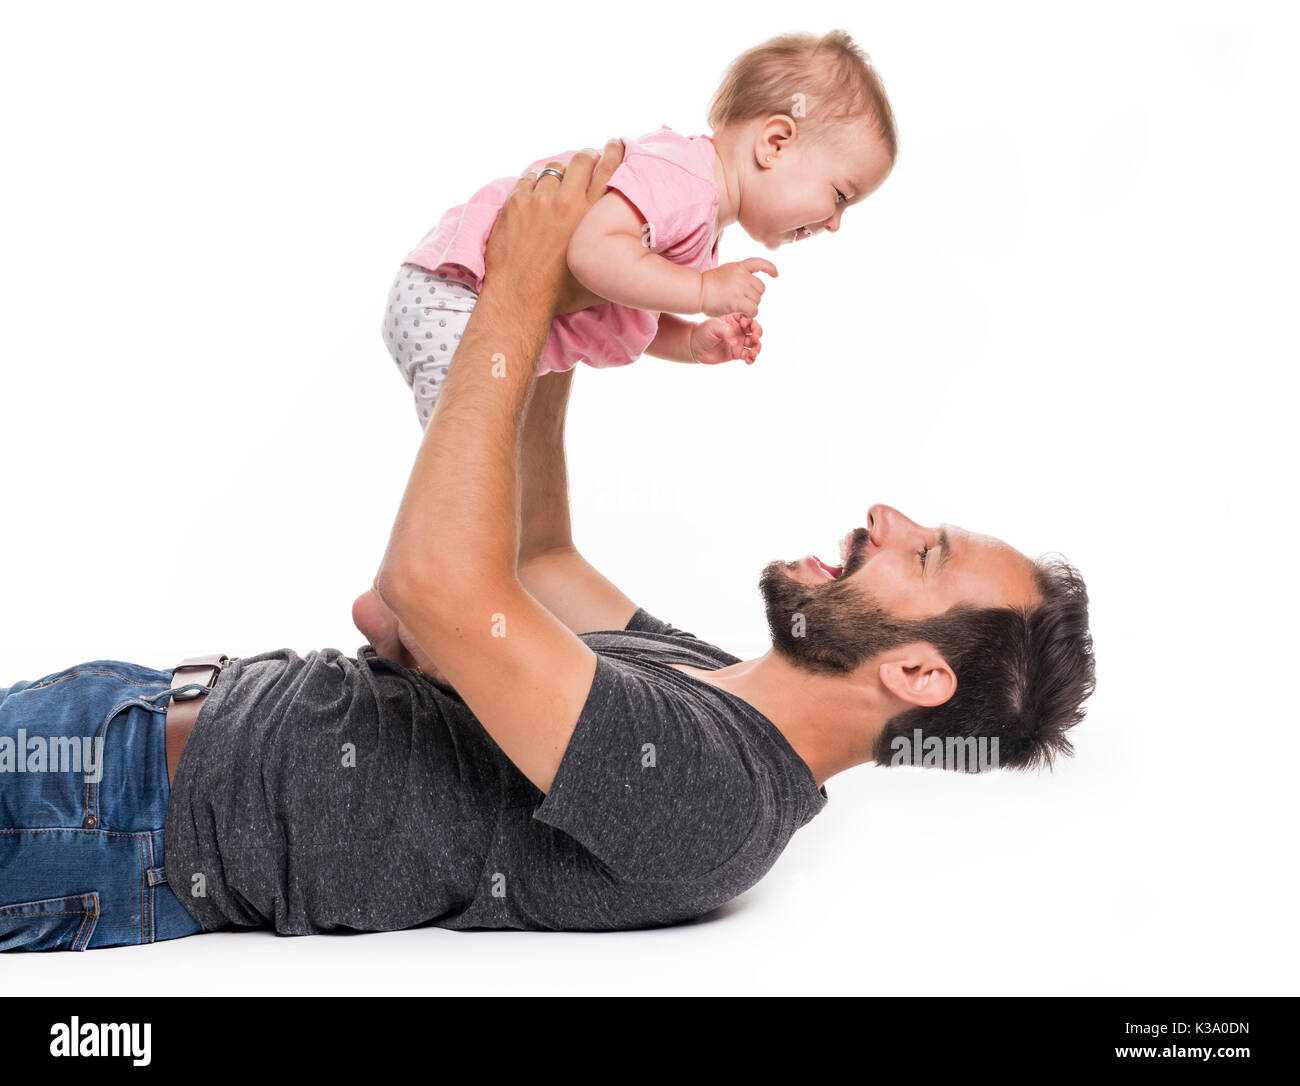 Jeune père de famille et sa fille embrassant et rire. isolés contre fond blanc Banque D'Images